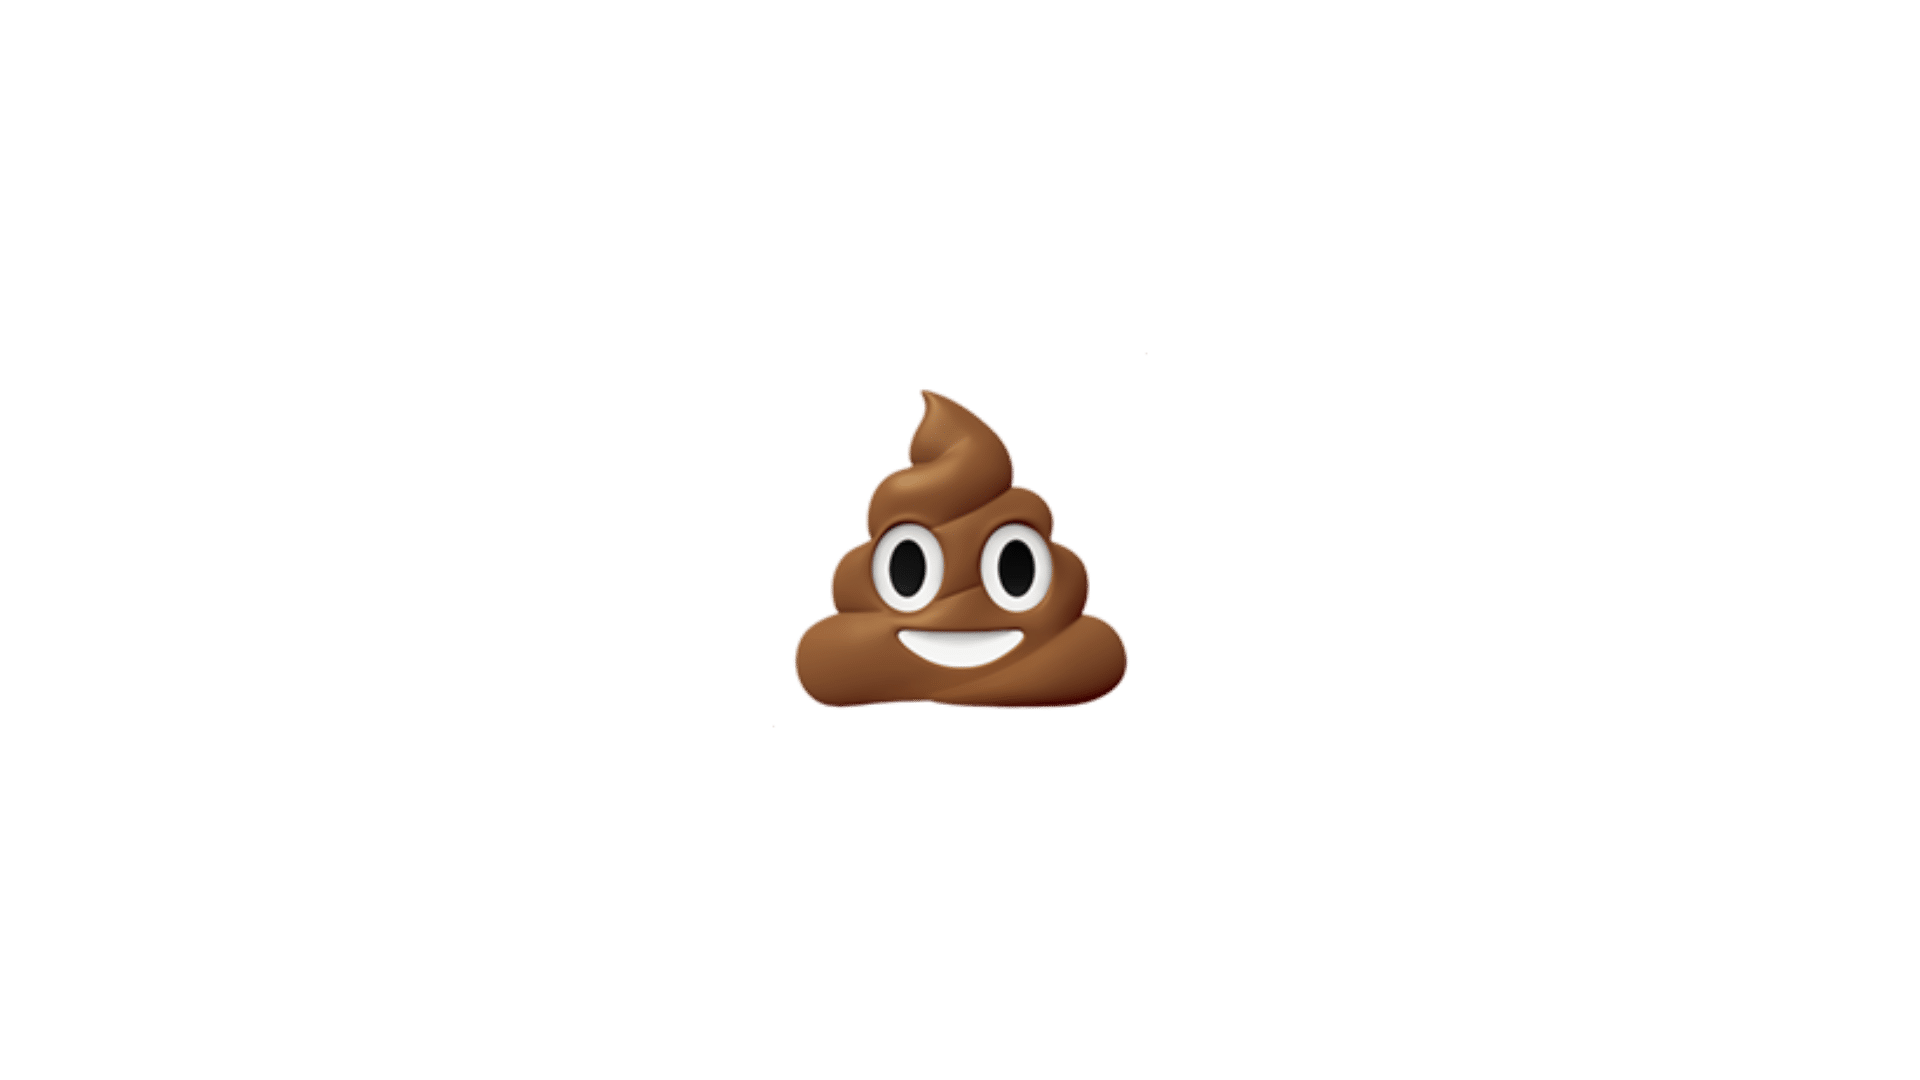 Illustrazione dell'immagine dell'emoji della cacca